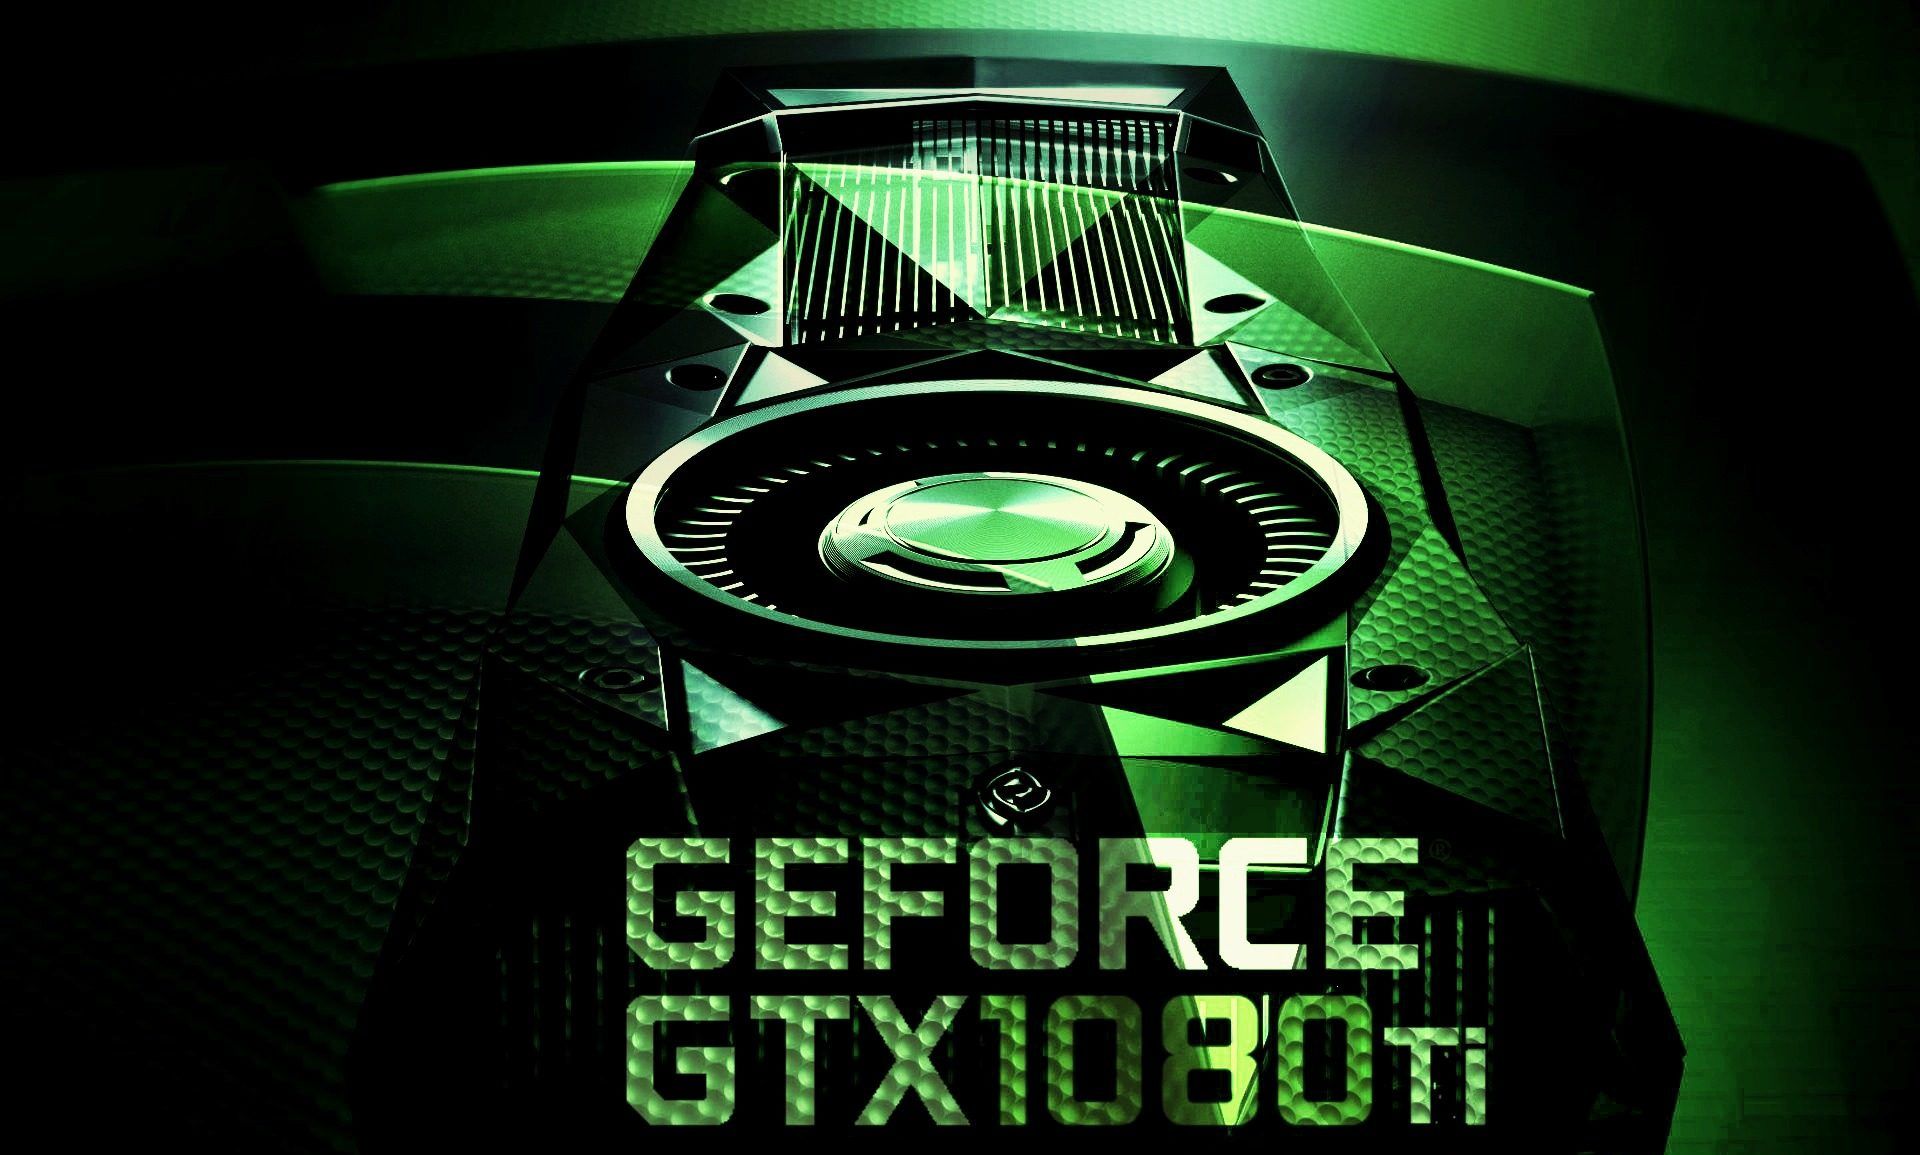 Nvidia GTX 1080 Ti pour Janvier 2017 ?